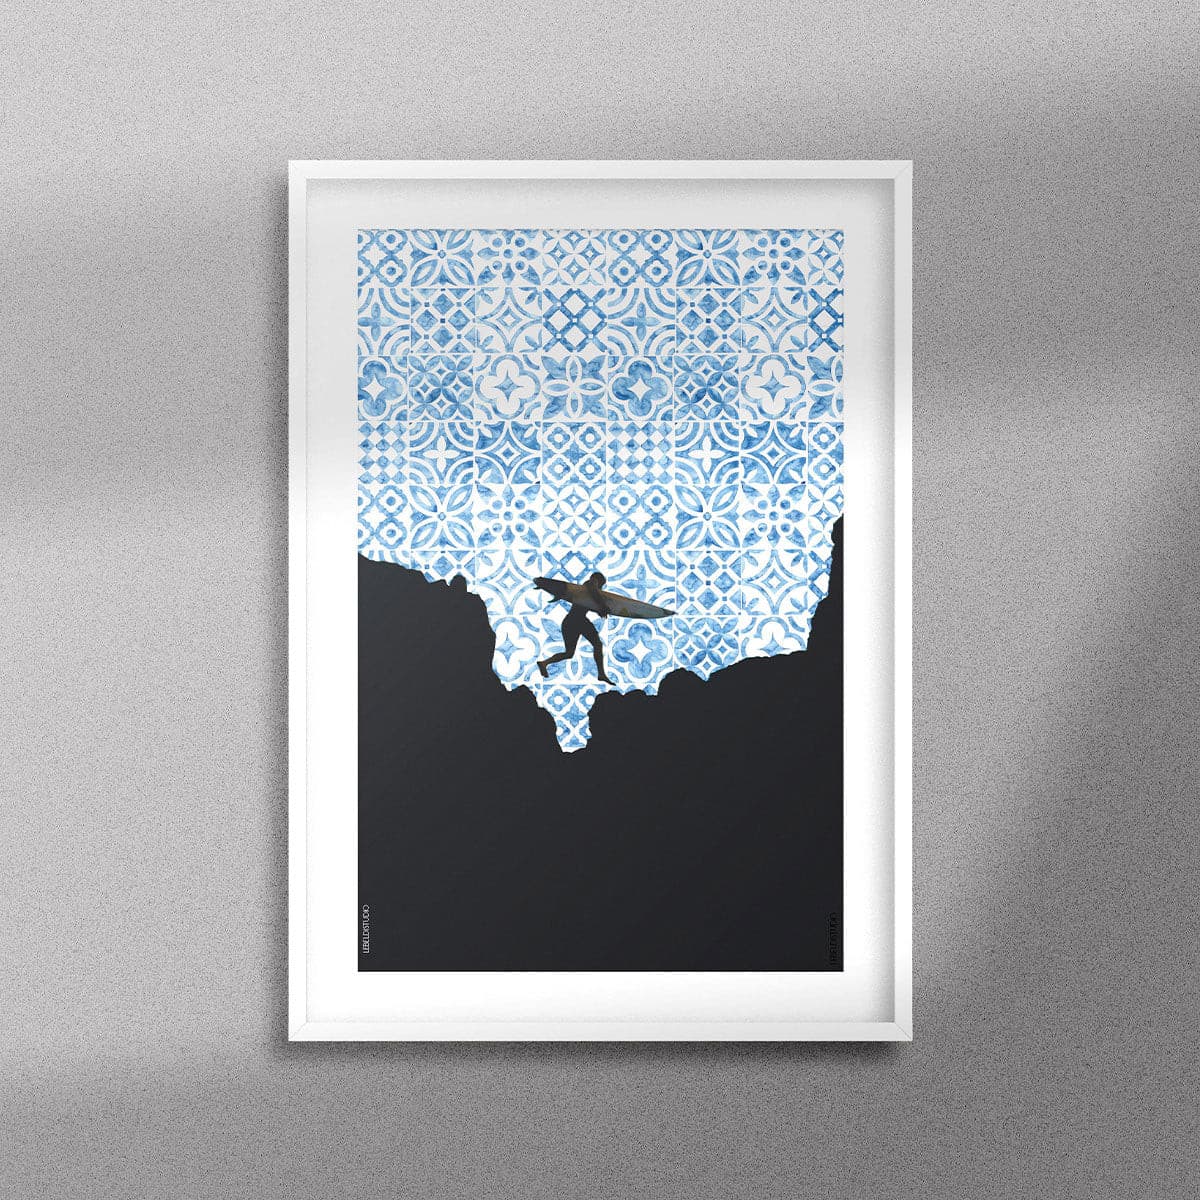 Tableau décoratif de la silhouette d'un surfeur sur un fond de motifs marocains en bleu, encadré dans un cadre blanc - Format A3.